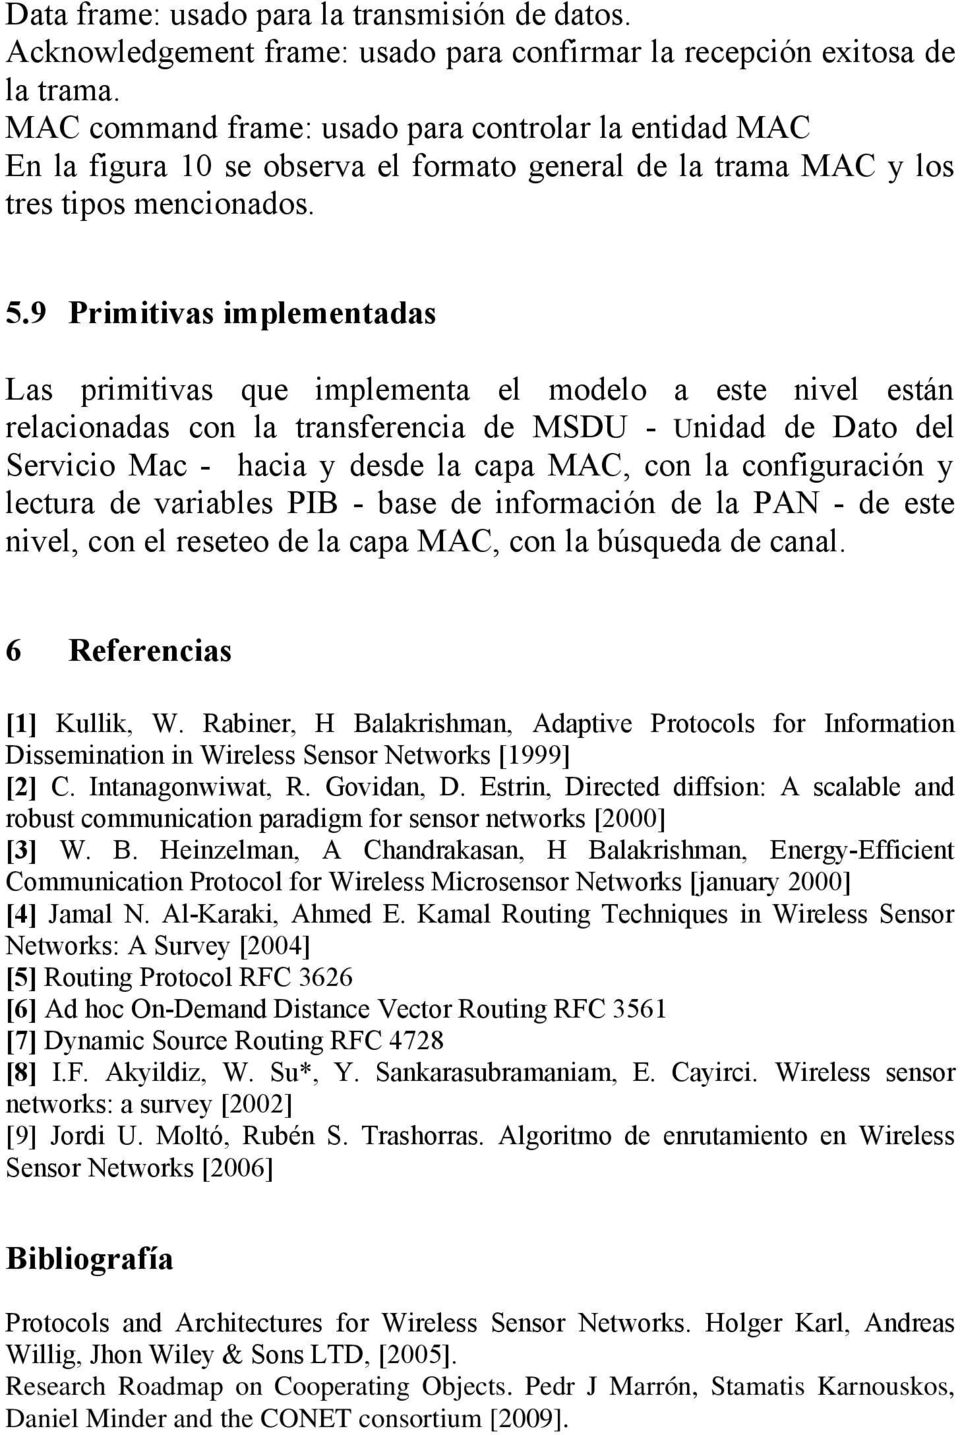 9 Primitivas implementadas Las primitivas que implementa el modelo a este nivel están relacionadas con la transferencia de MSDU - Unidad de Dato del Servicio Mac - hacia y desde la capa MAC, con la